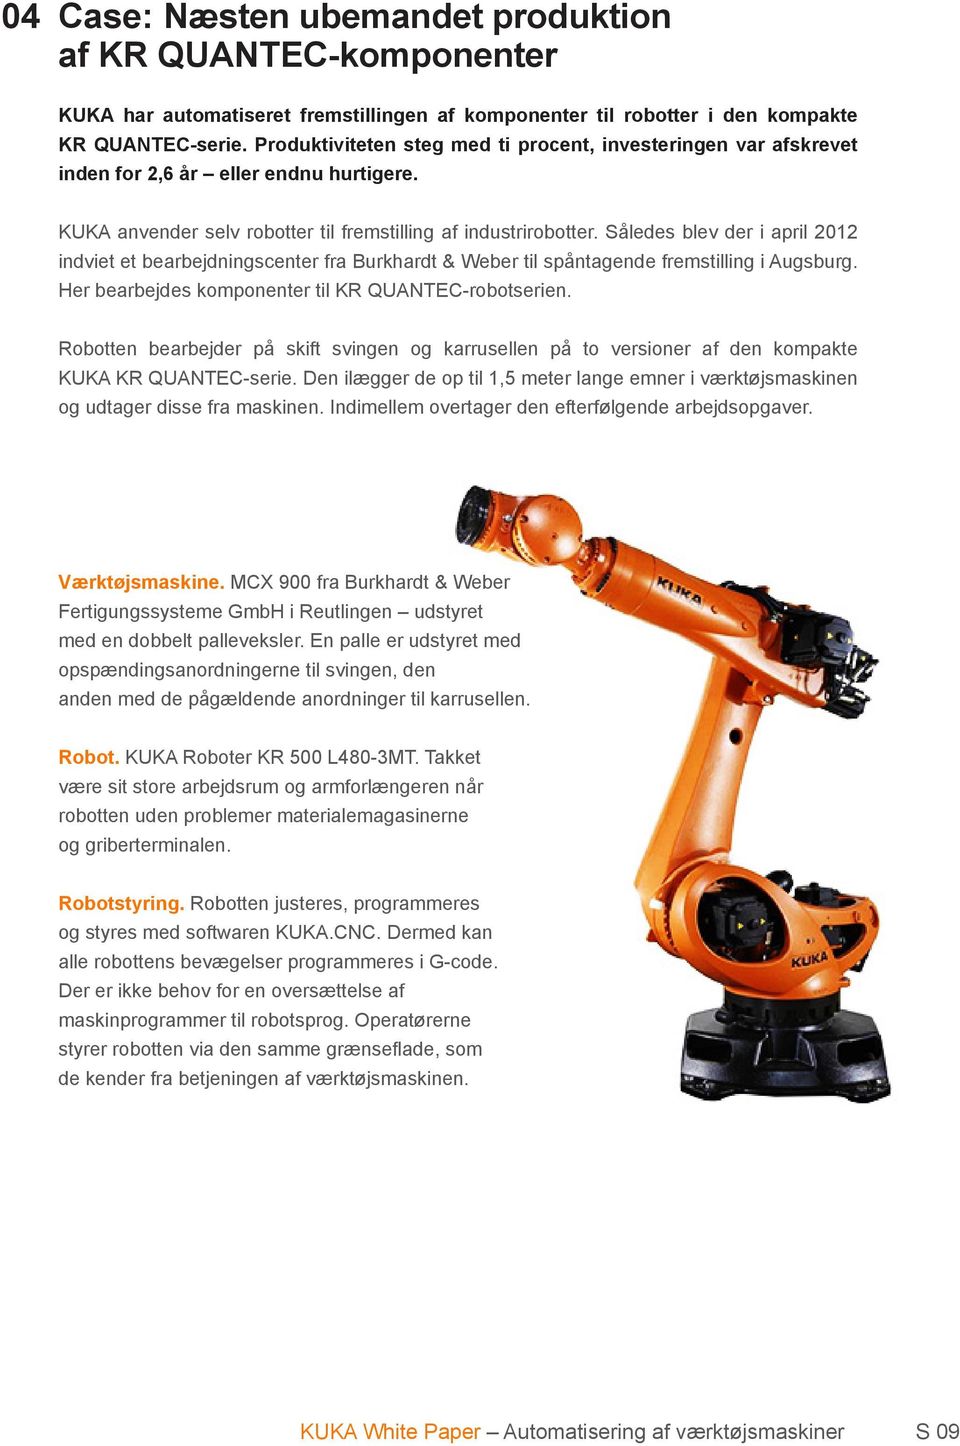 Således blev der i april 2012 indviet et bearbejdningscenter fra Burkhardt & Weber til spåntagende fremstilling i Augsburg. Her bearbejdes komponenter til KR QUANTEC-robotserien.